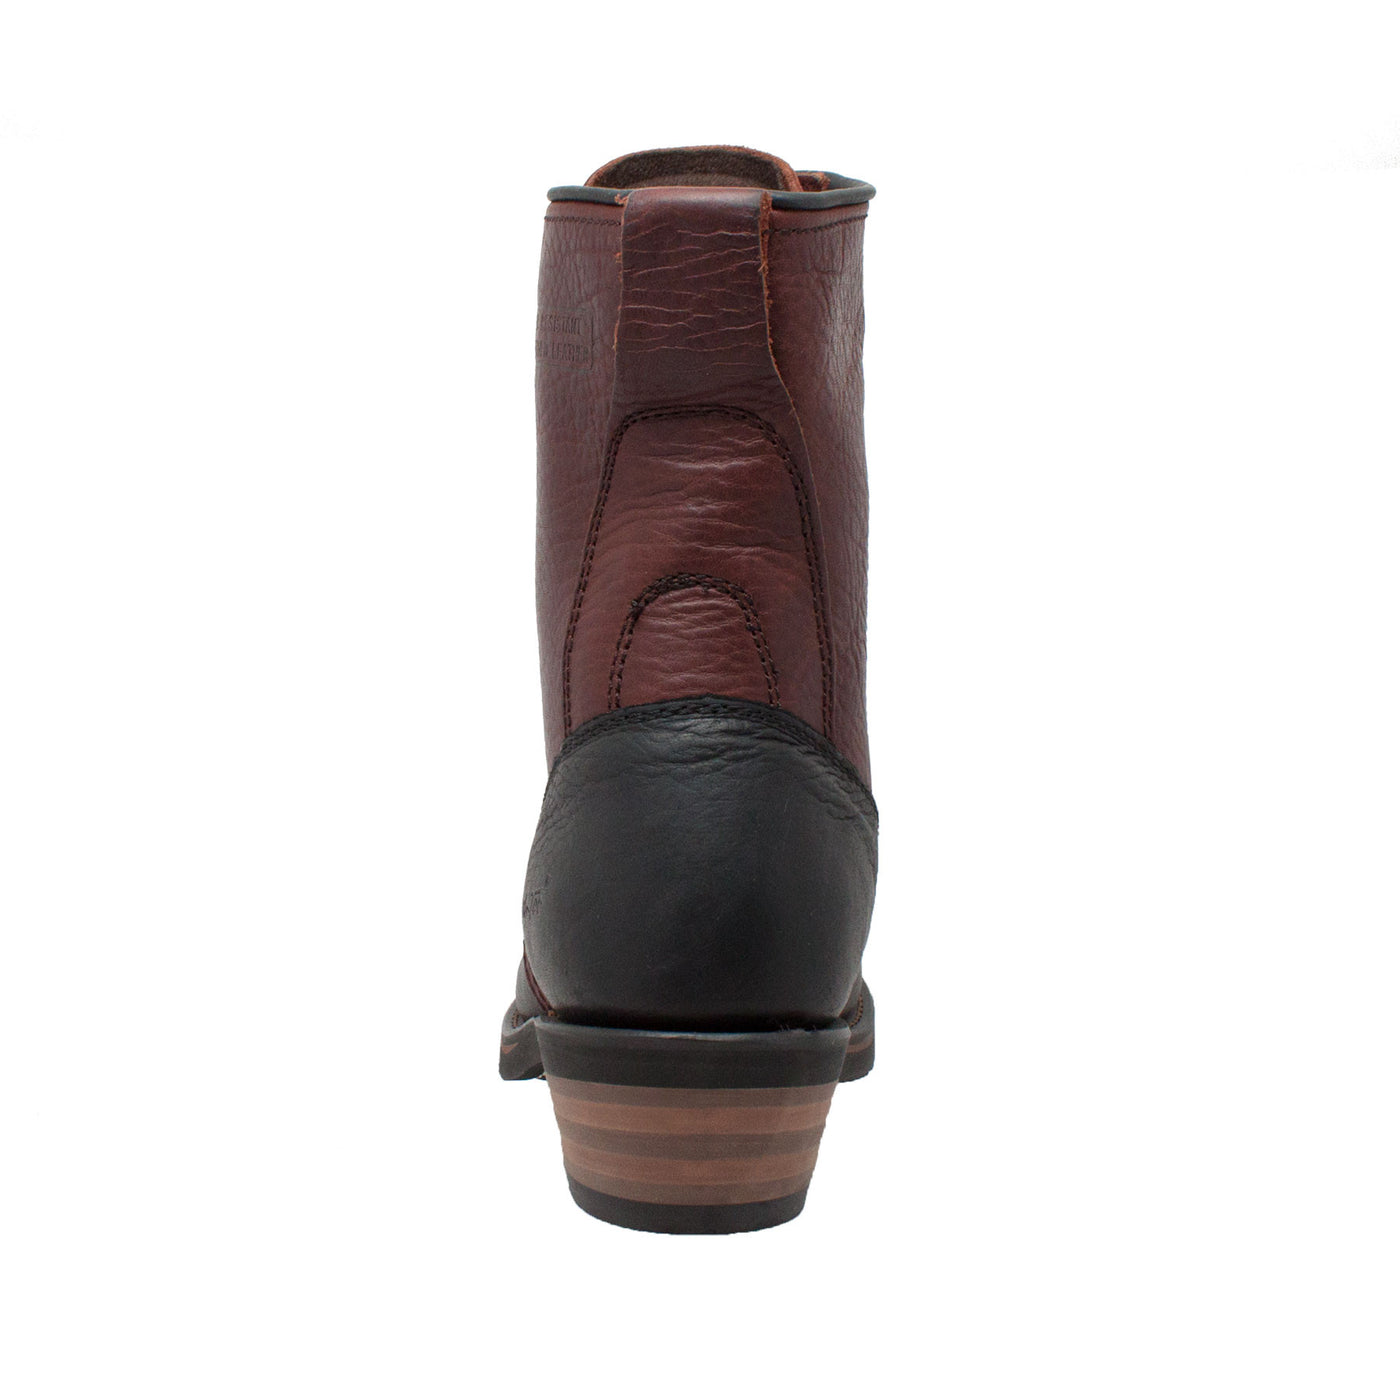 Women's 8" Black/Dark Cherry Packer - 2179 - Shop Genuine Leather men & women's boots online | AdTecFootWear